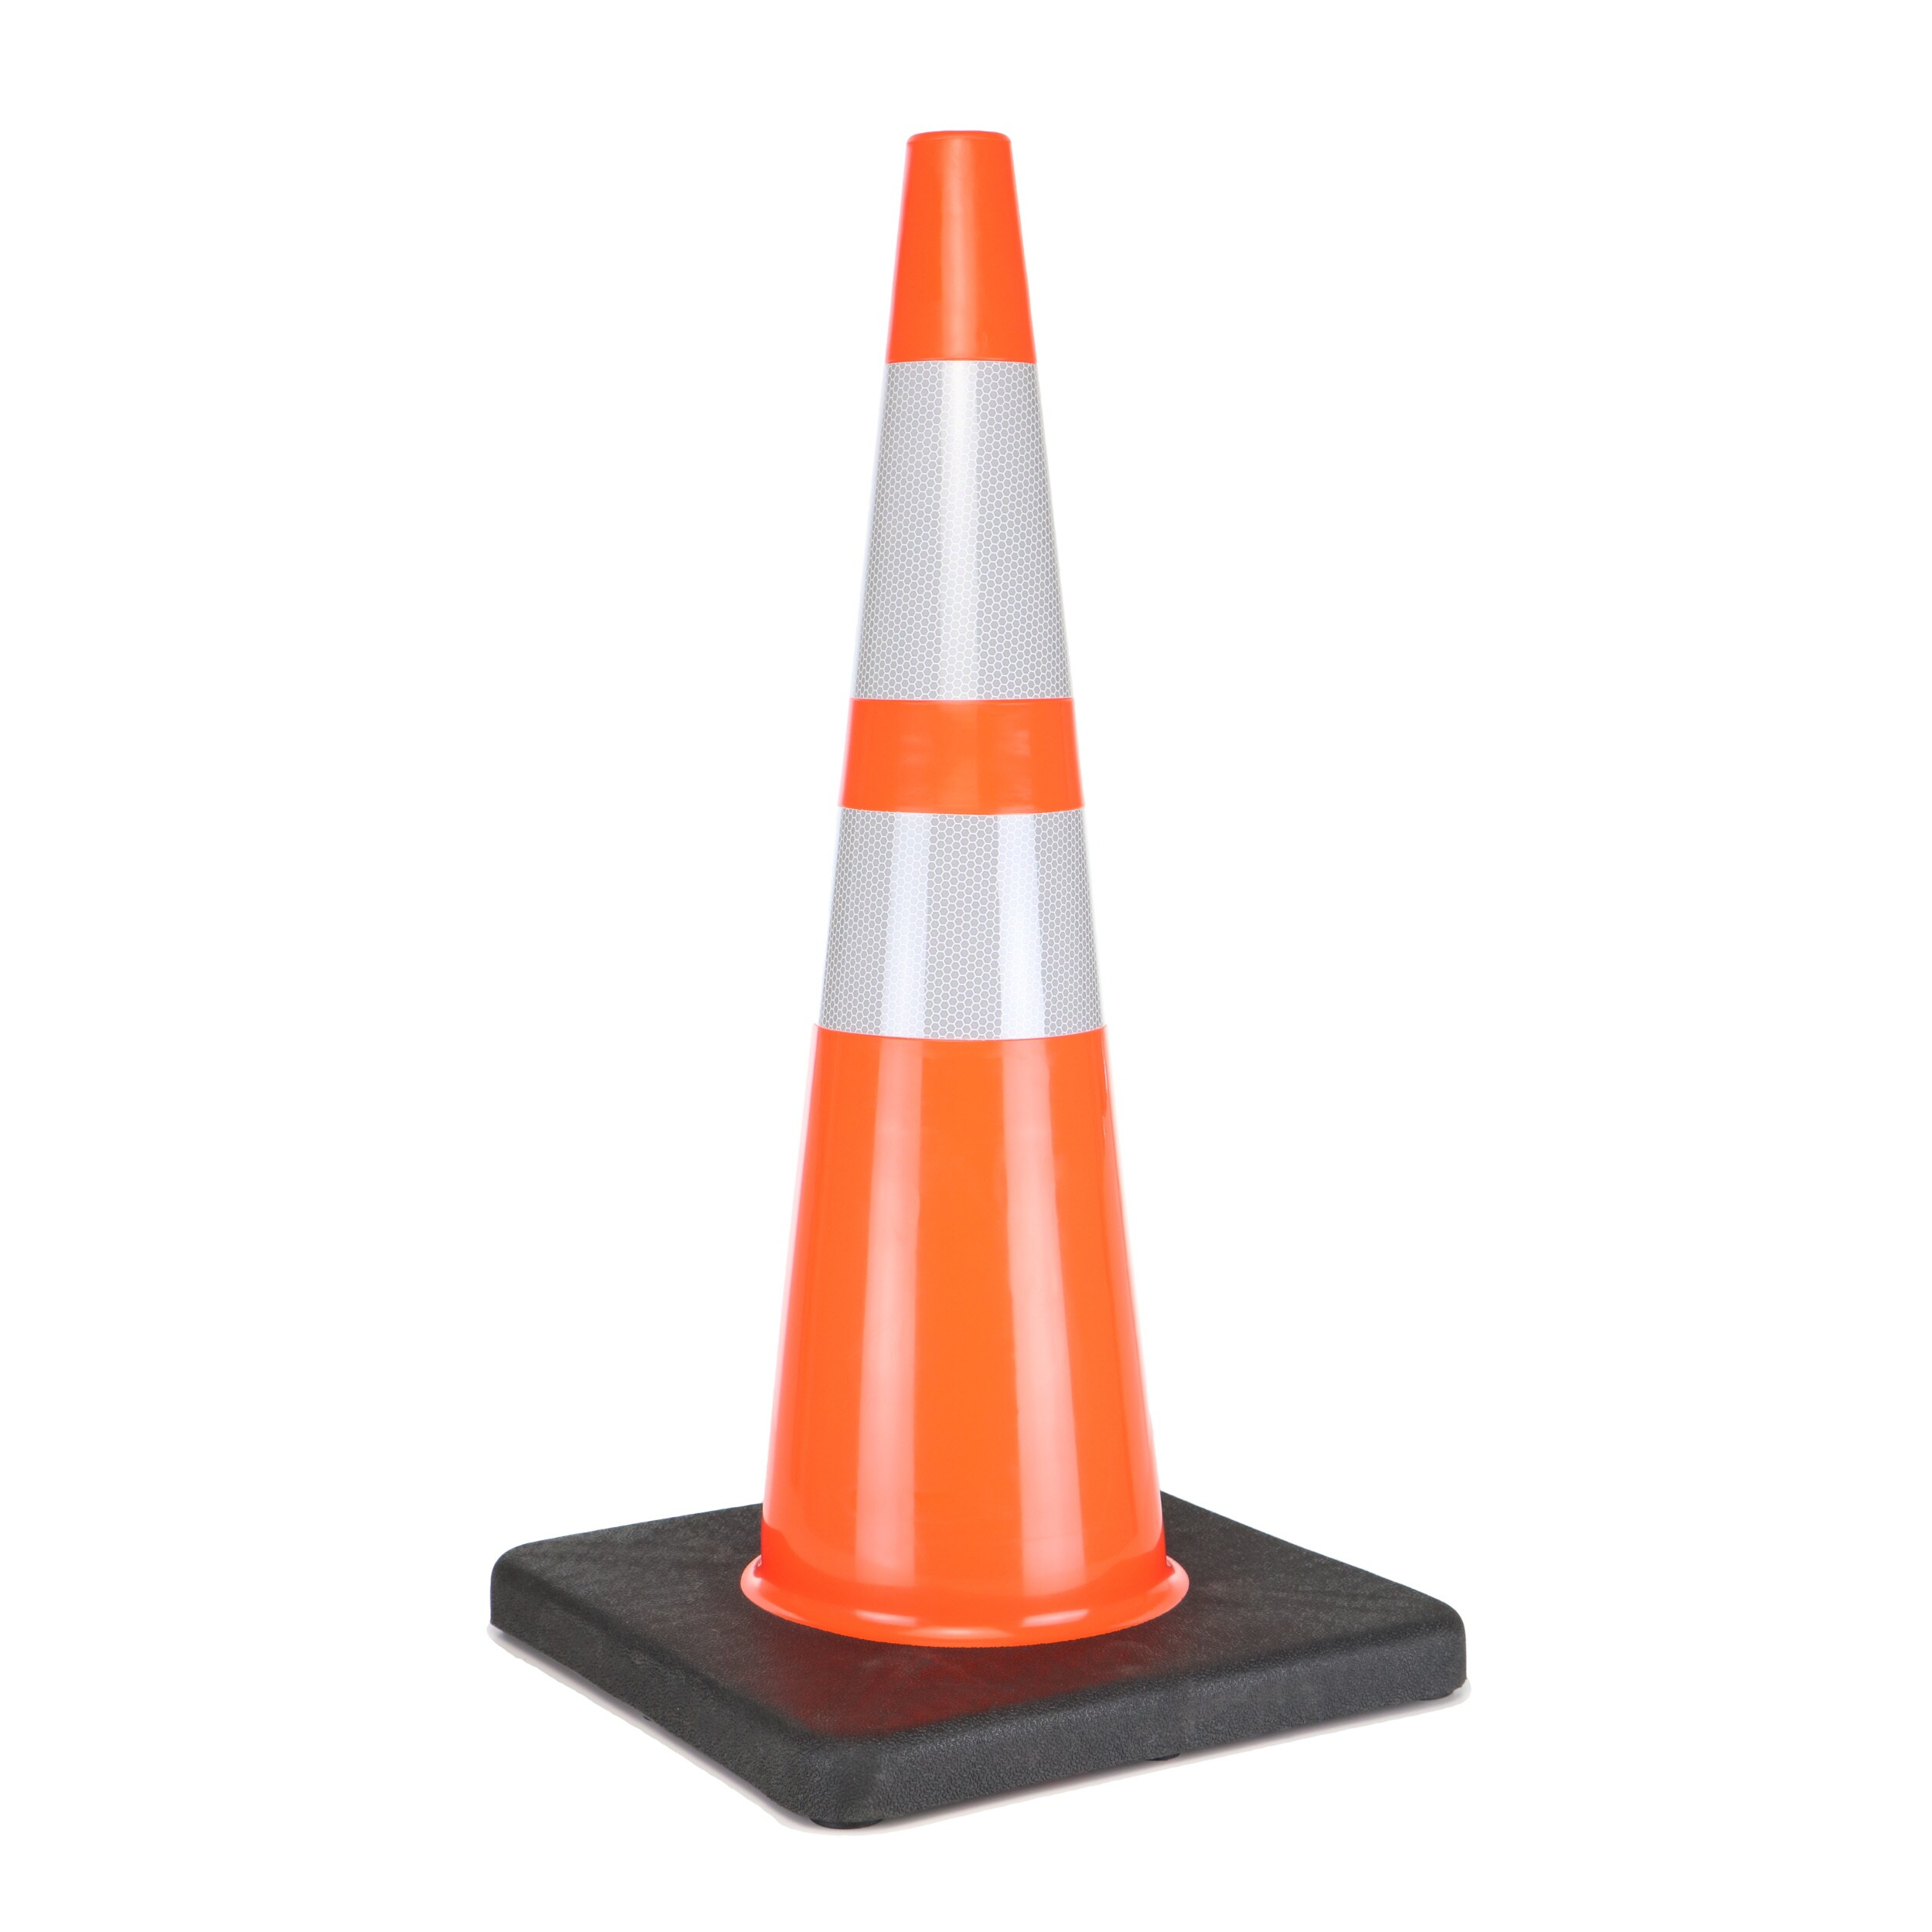 MSA Safety Works 10073408 Bright Orange Safety Cone 24" 